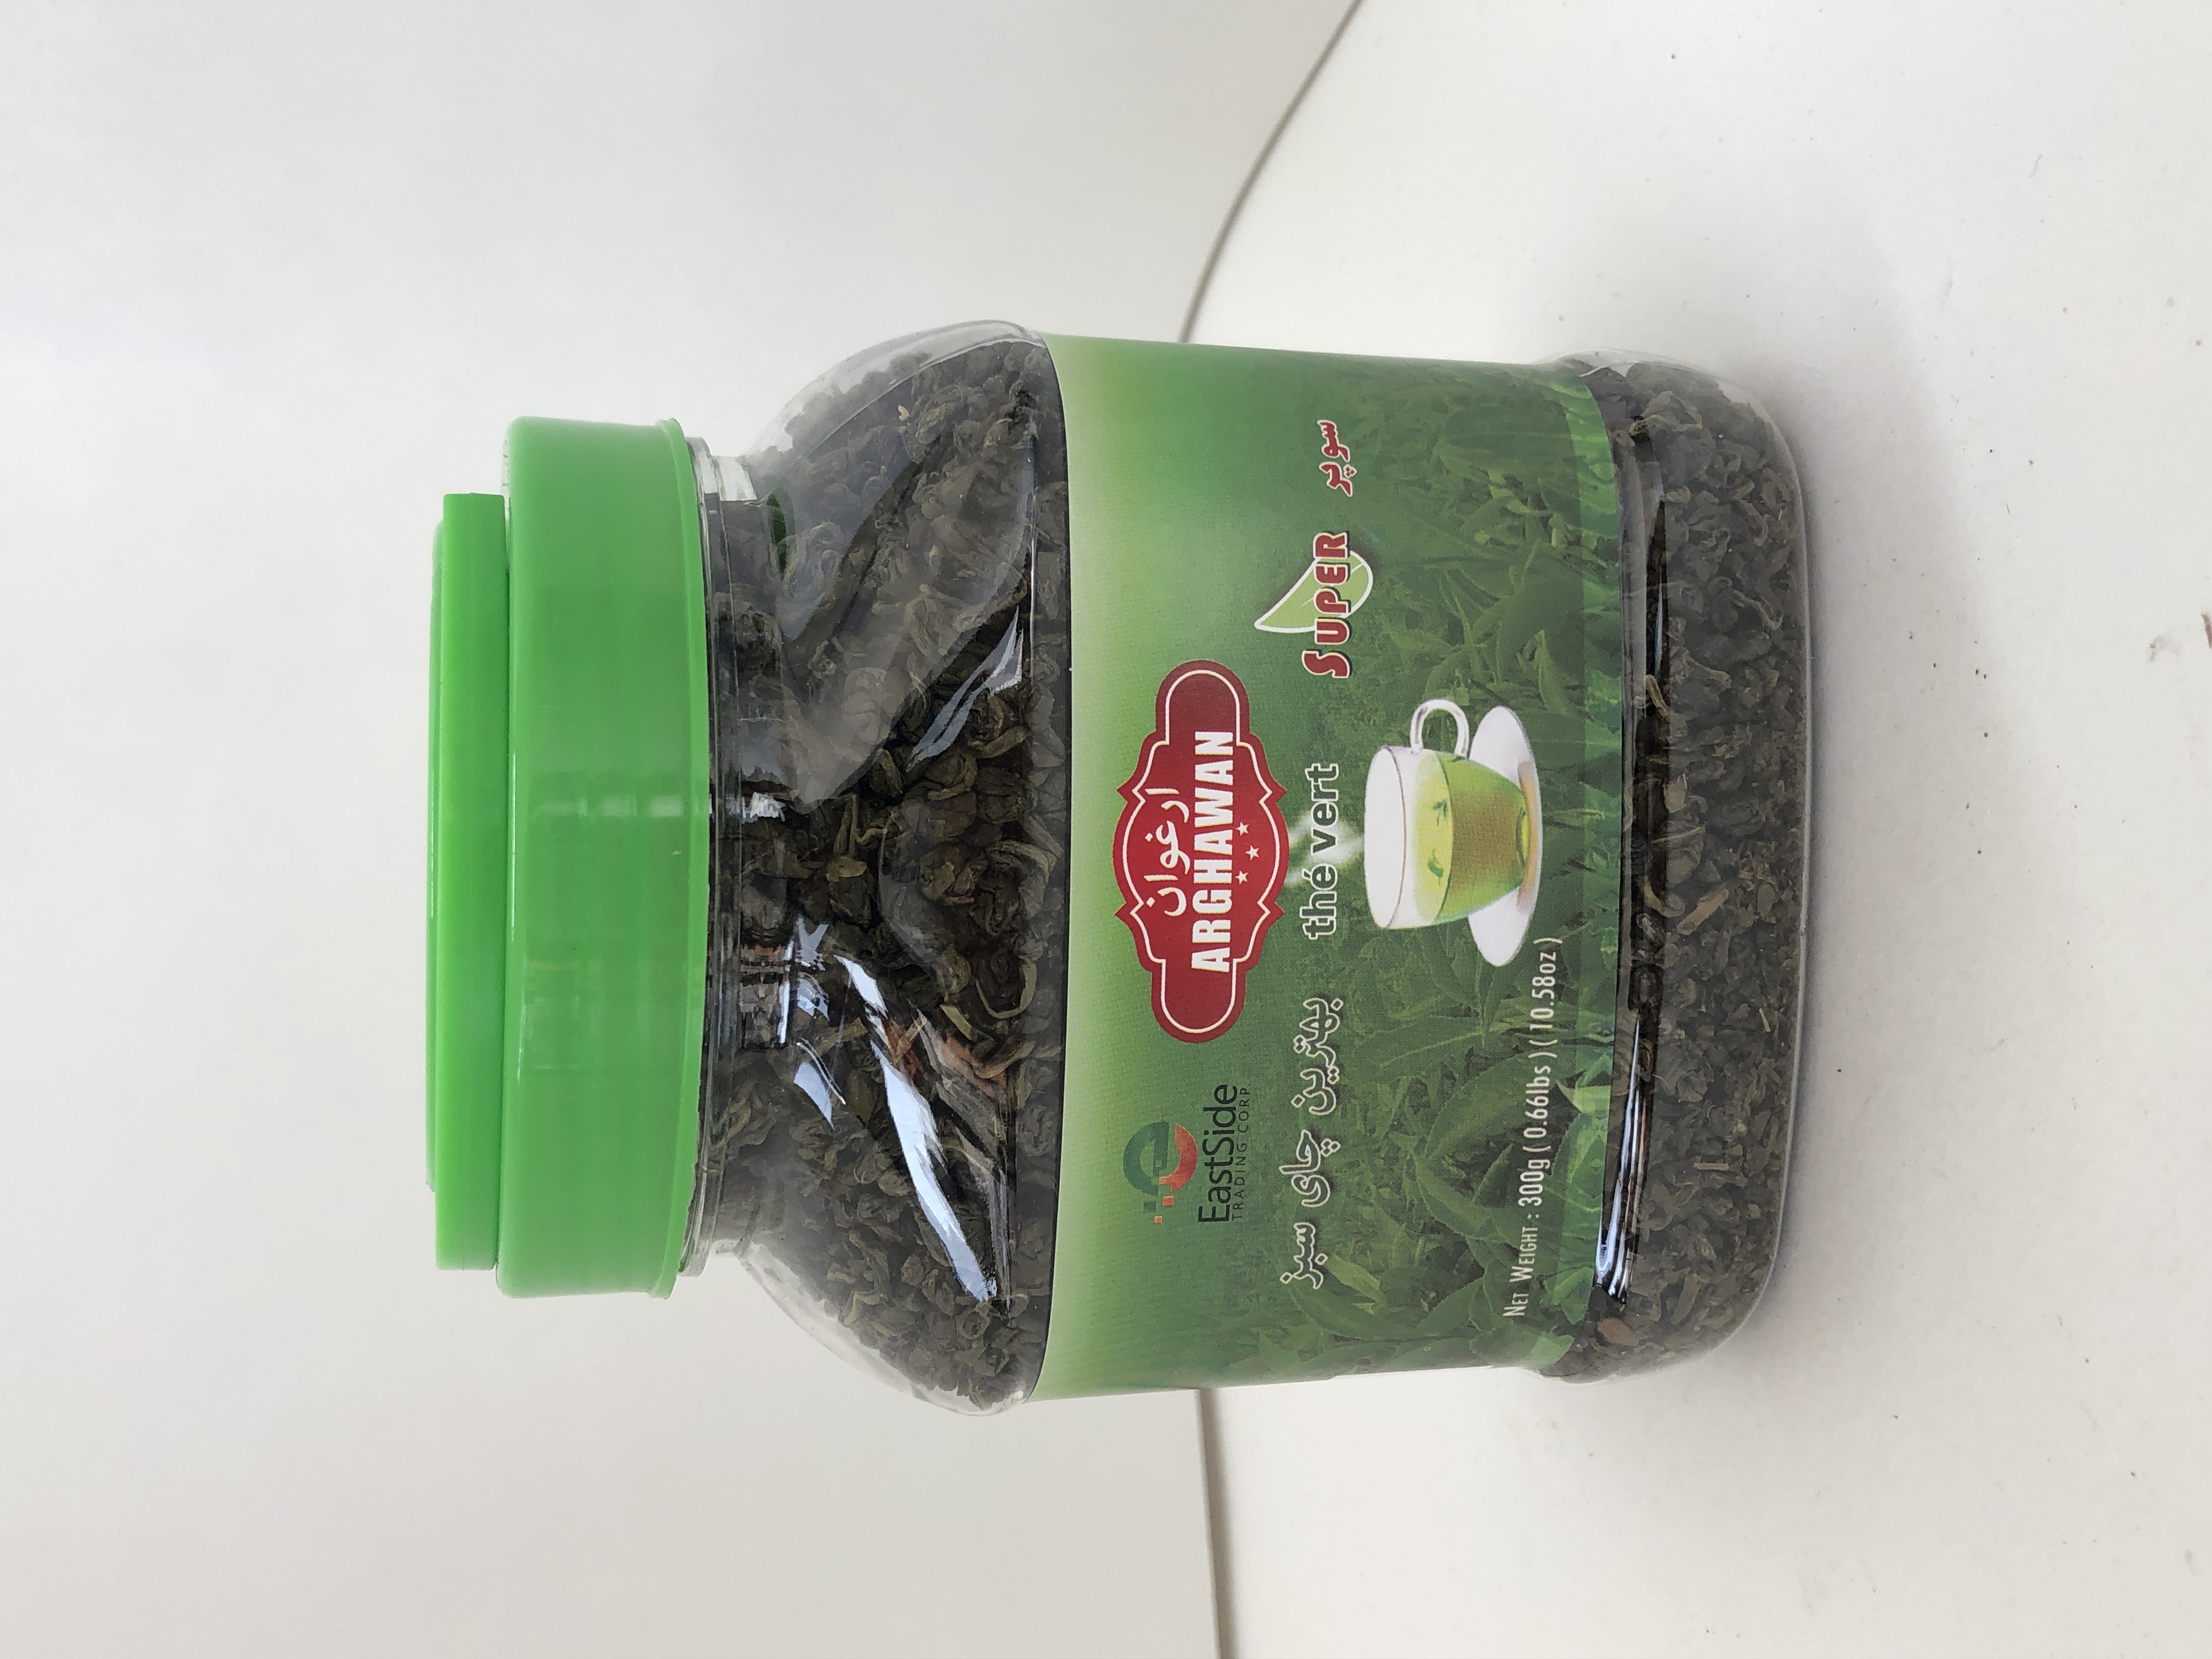 Green Tea (Super)